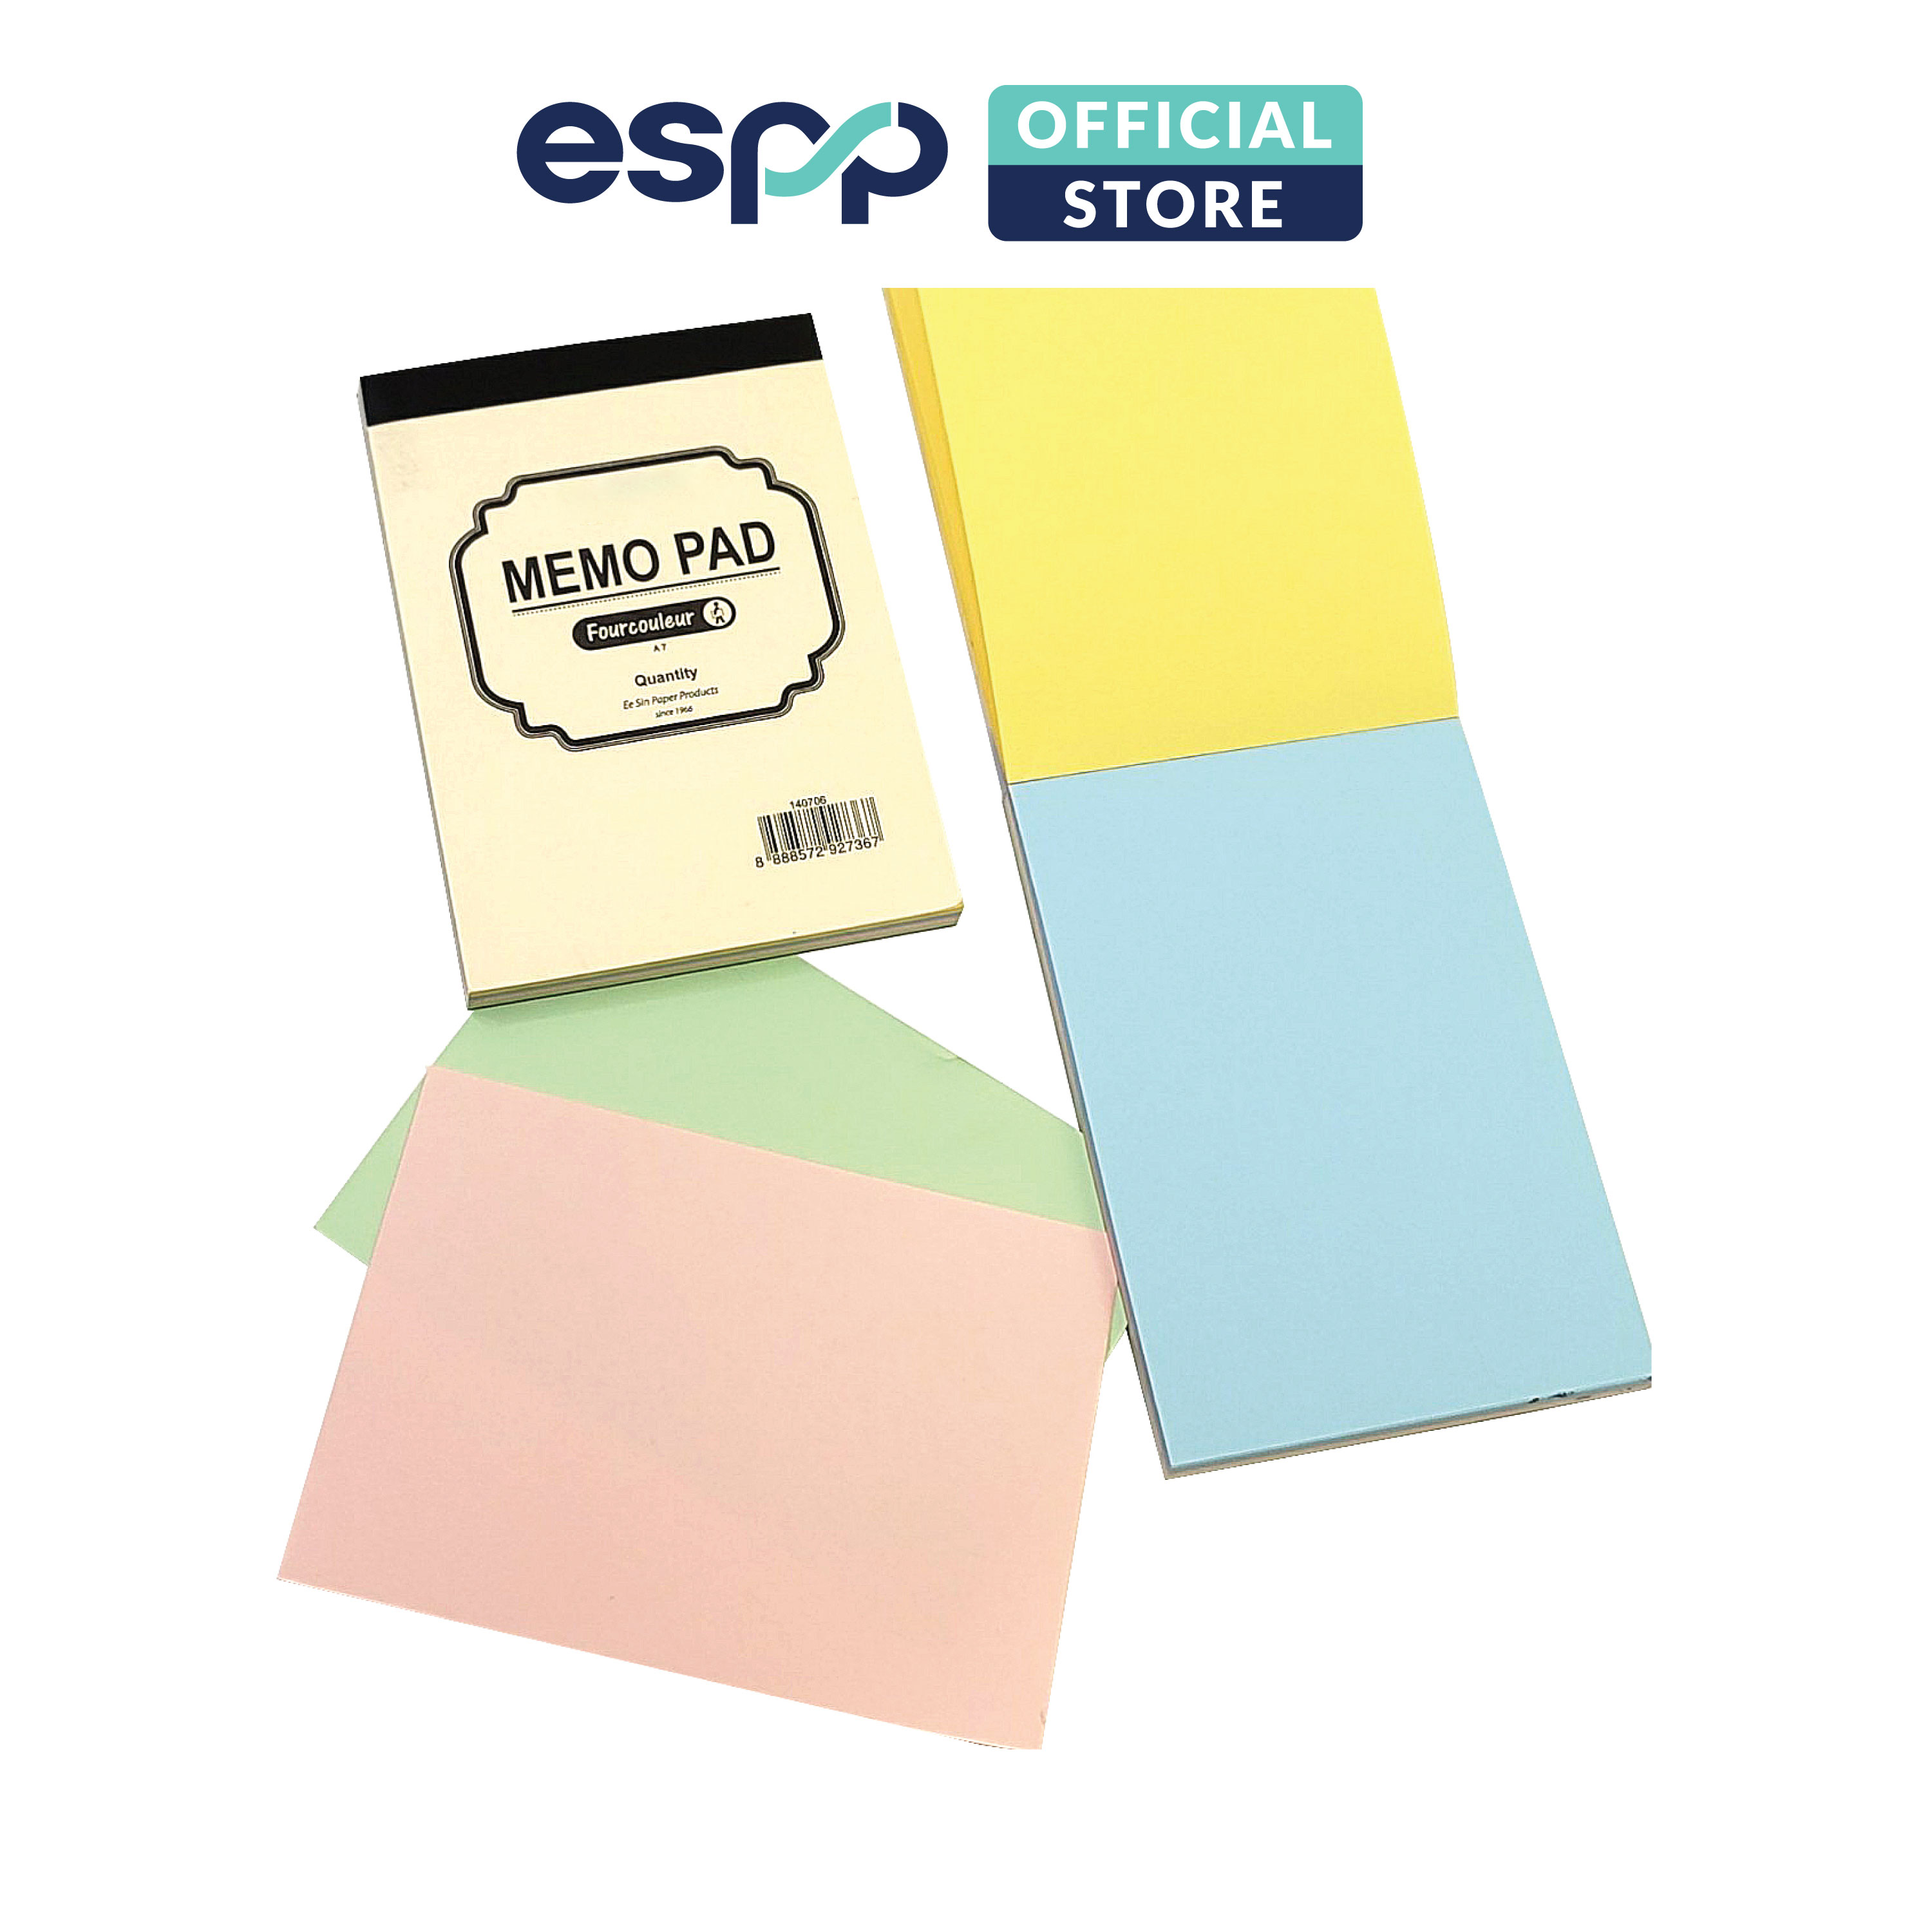 Sổ giấy note 4 màu 60 tờ khổ A7 - ESPP